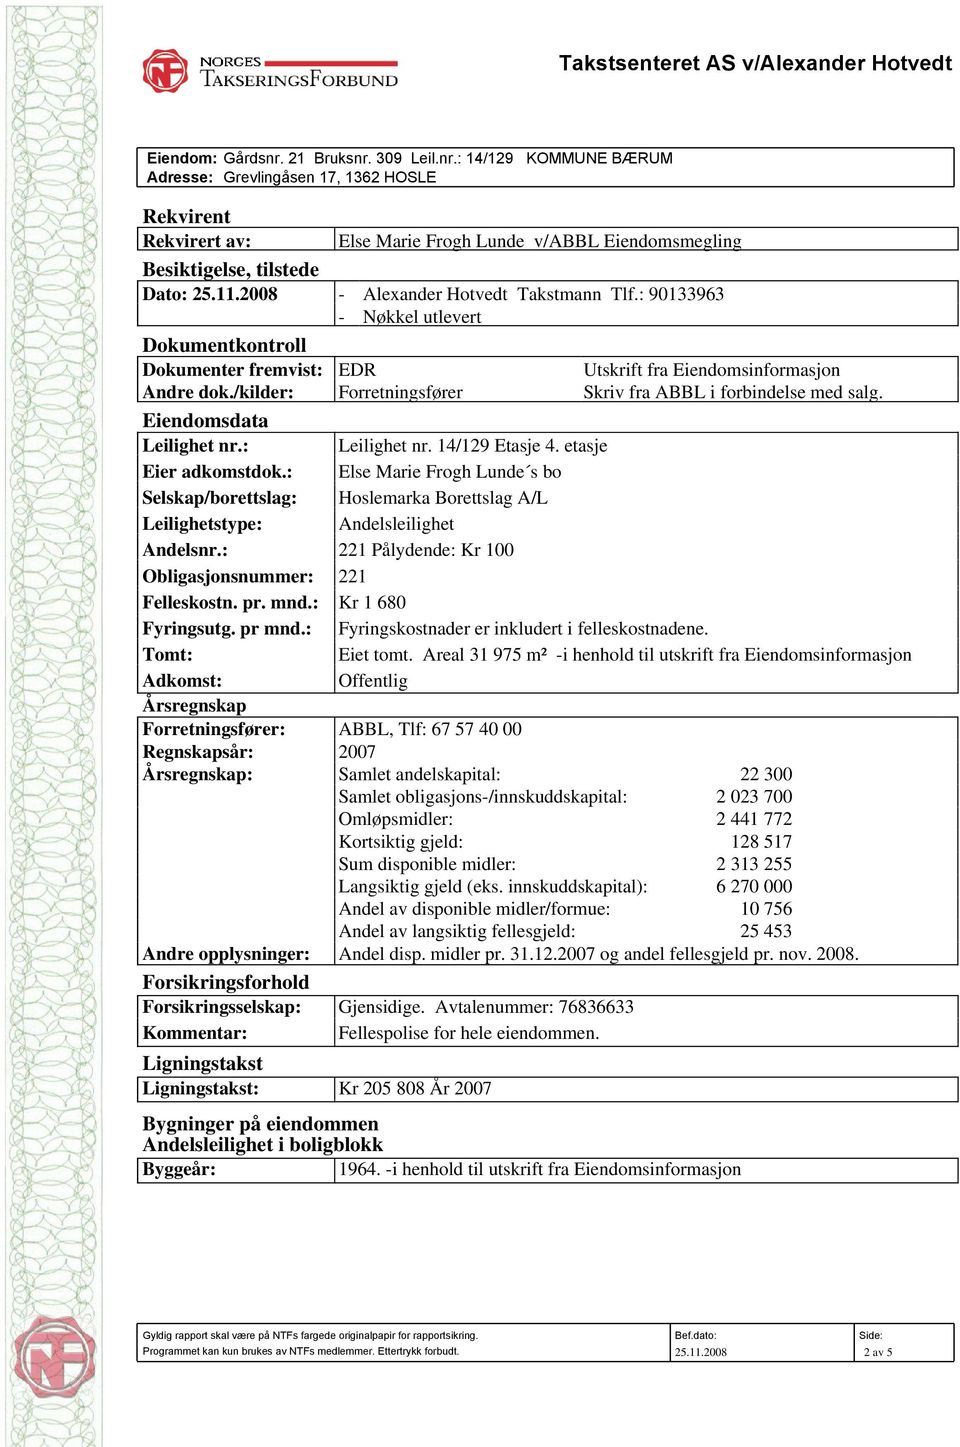 2008 - Alexander Hotvedt Takstmann Tlf.: 90133963 - Nøkkel utlevert Dokumentkontroll Dokumenter fremvist: EDR Utskrift fra Eiendomsinformasjon Andre dok.